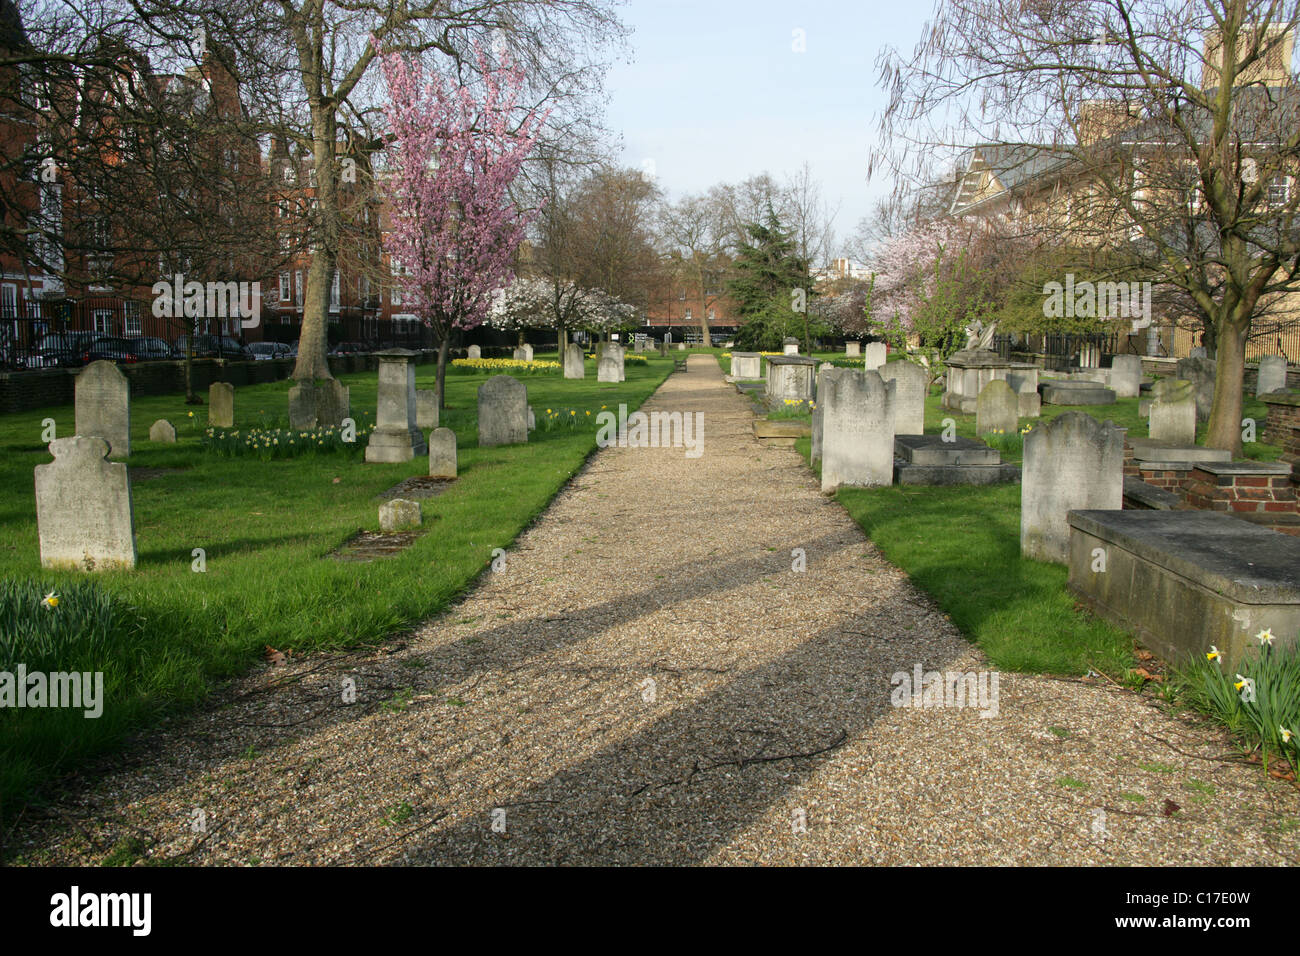 Il Vecchio terreno di sepoltura, il Royal Hospital Chelsea, Londra, Regno Unito. Foto Stock